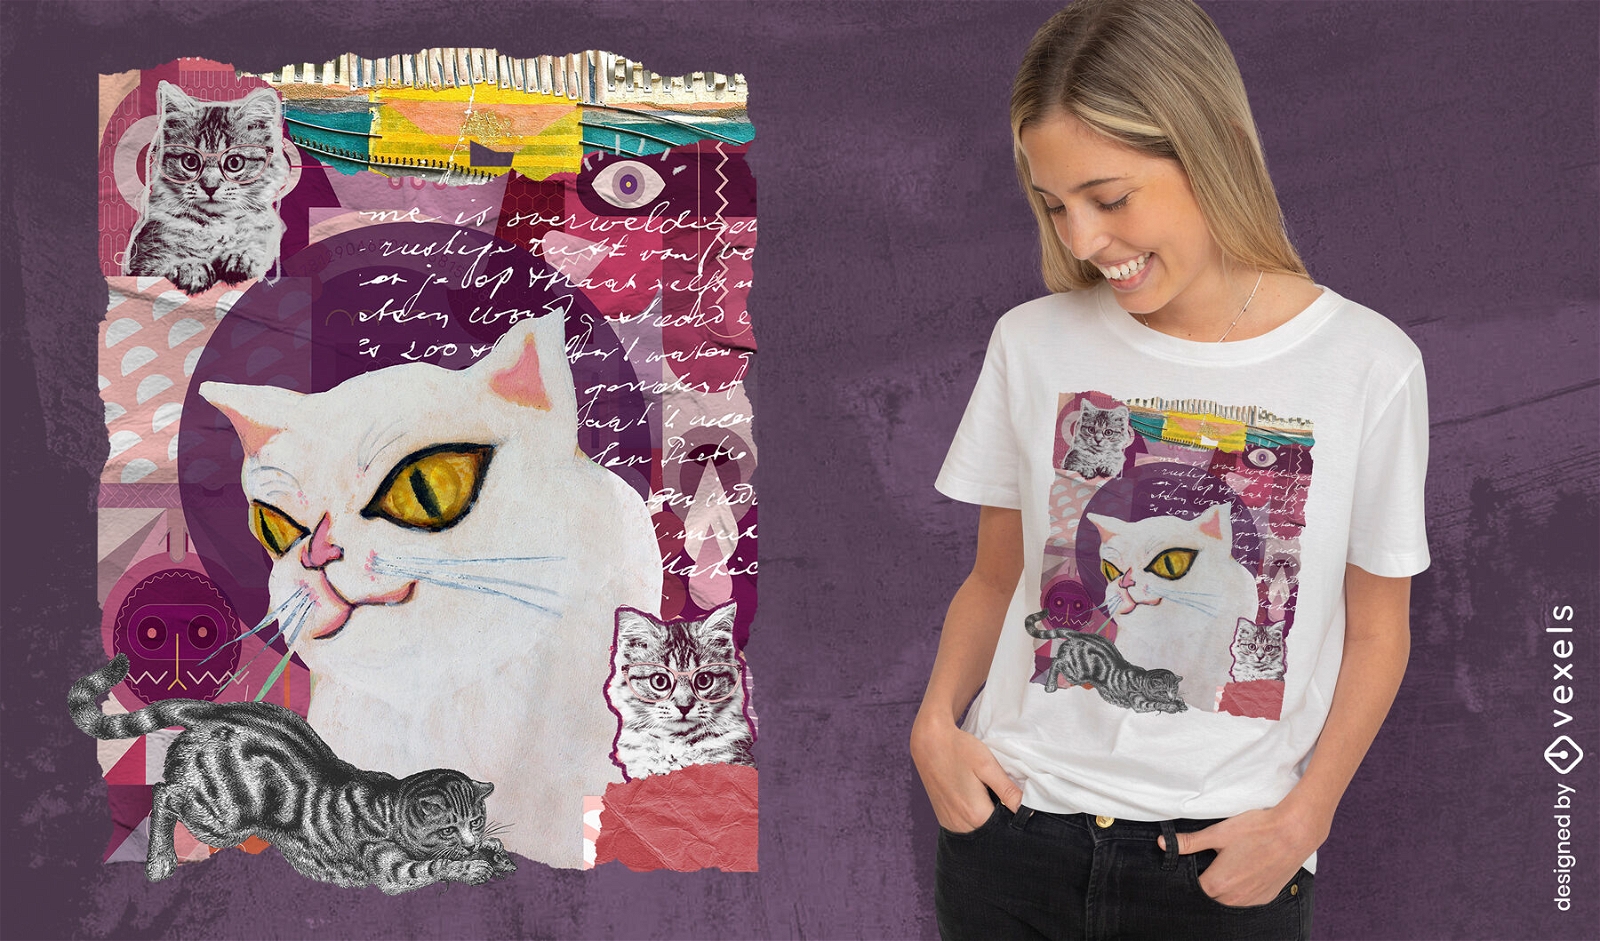 Cat collage t-shirt design